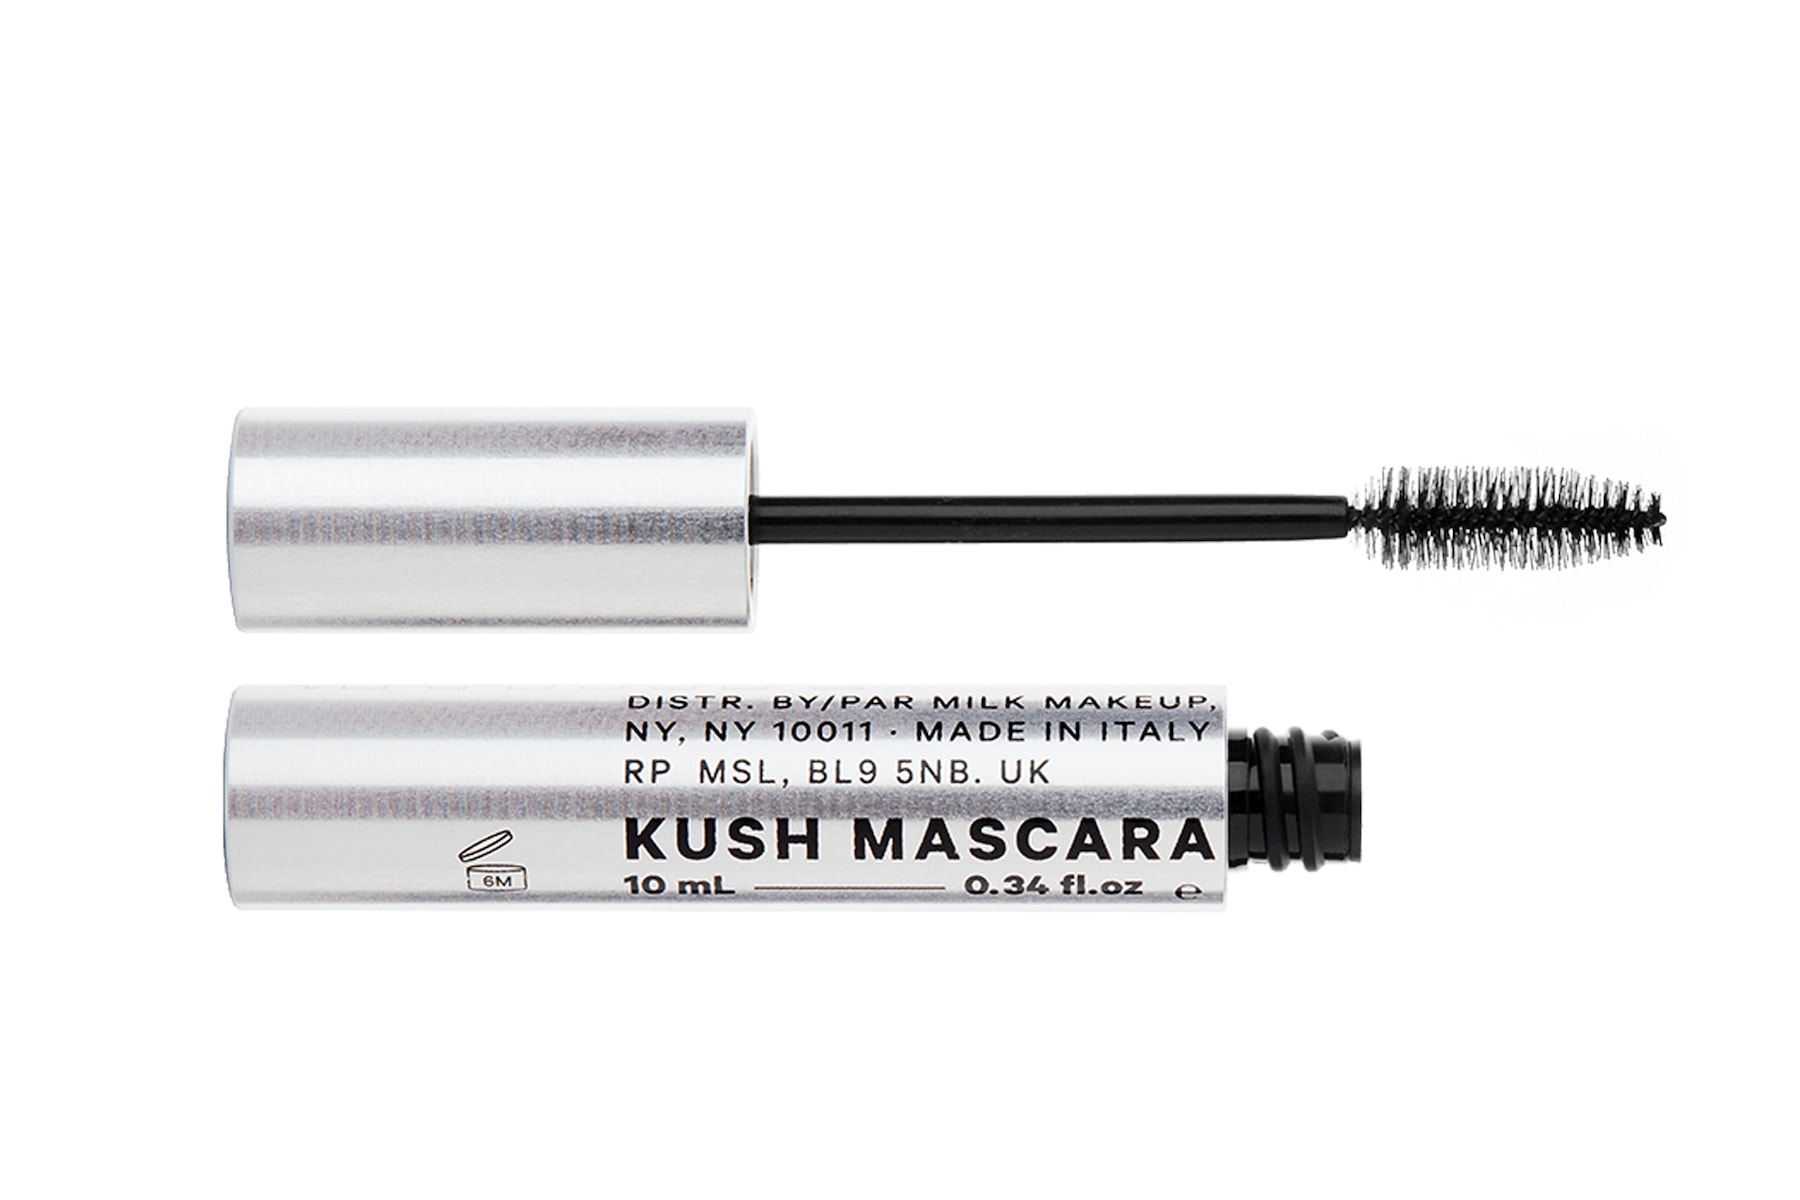 Milk Makeup Kush Mascara Review Eyelashes Long Eyelashes Product Weed CBD Cannabis